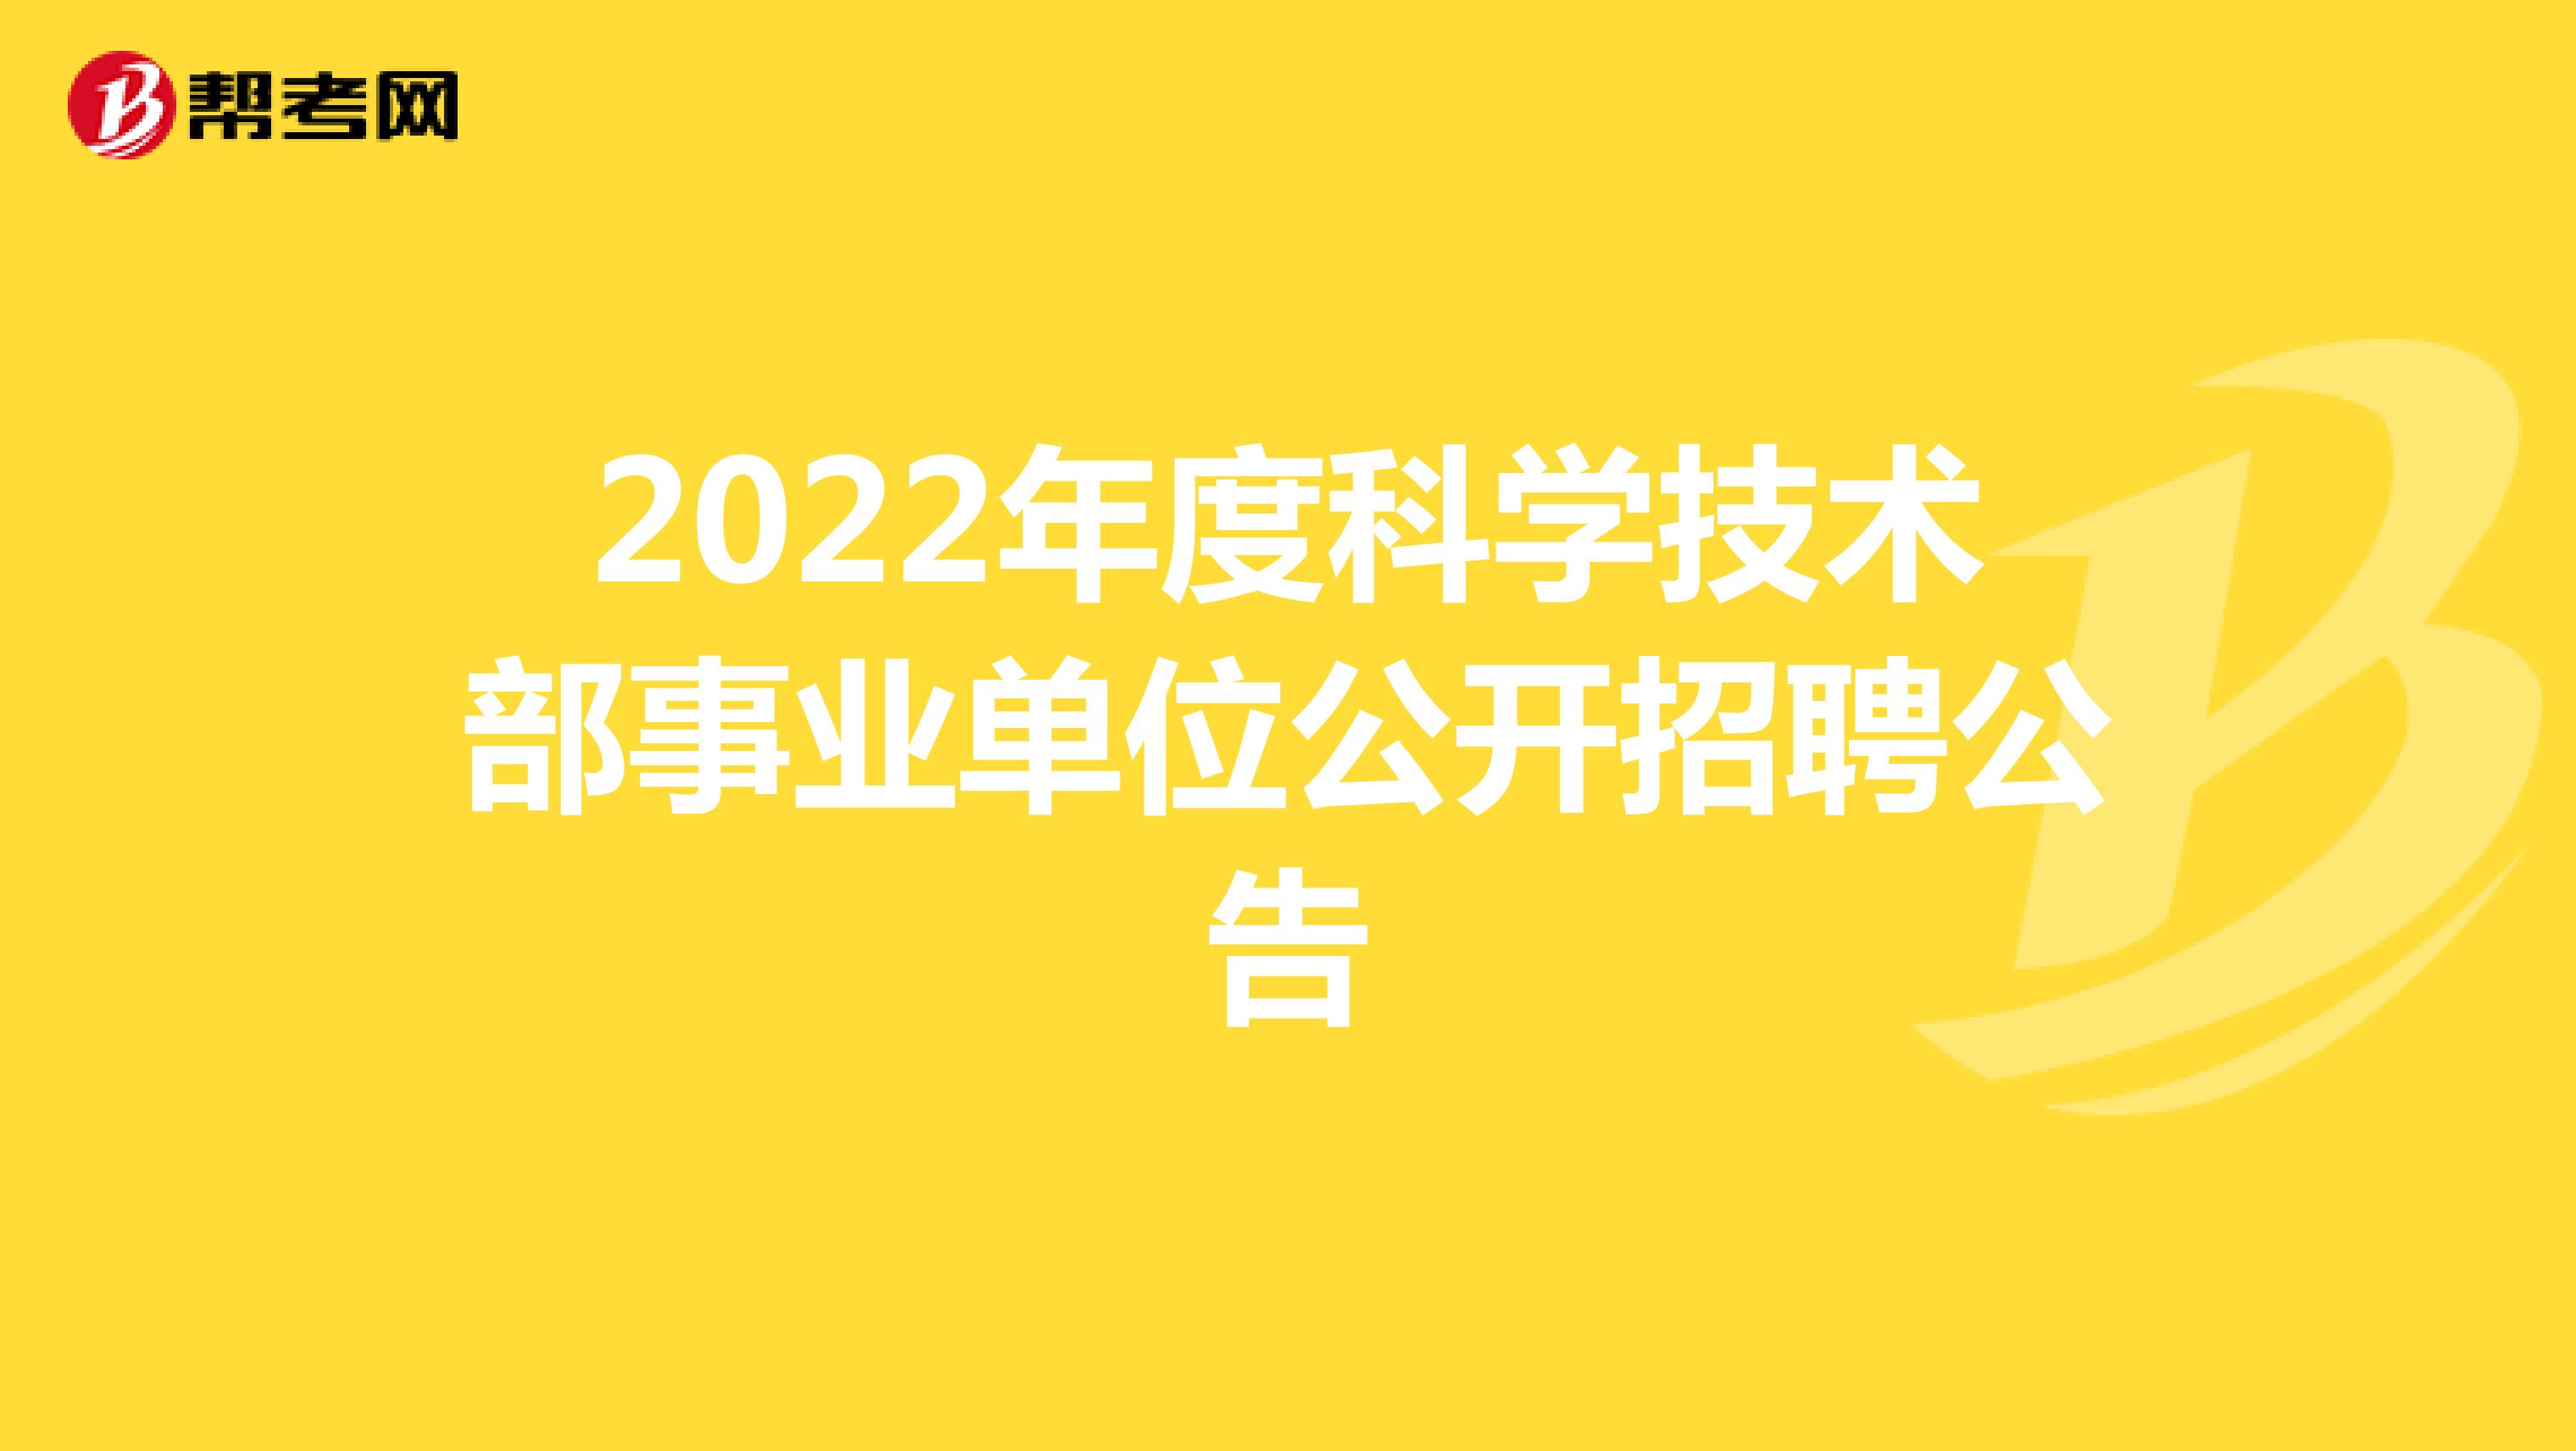 2022年度科学技术部事业单位公开招聘公告